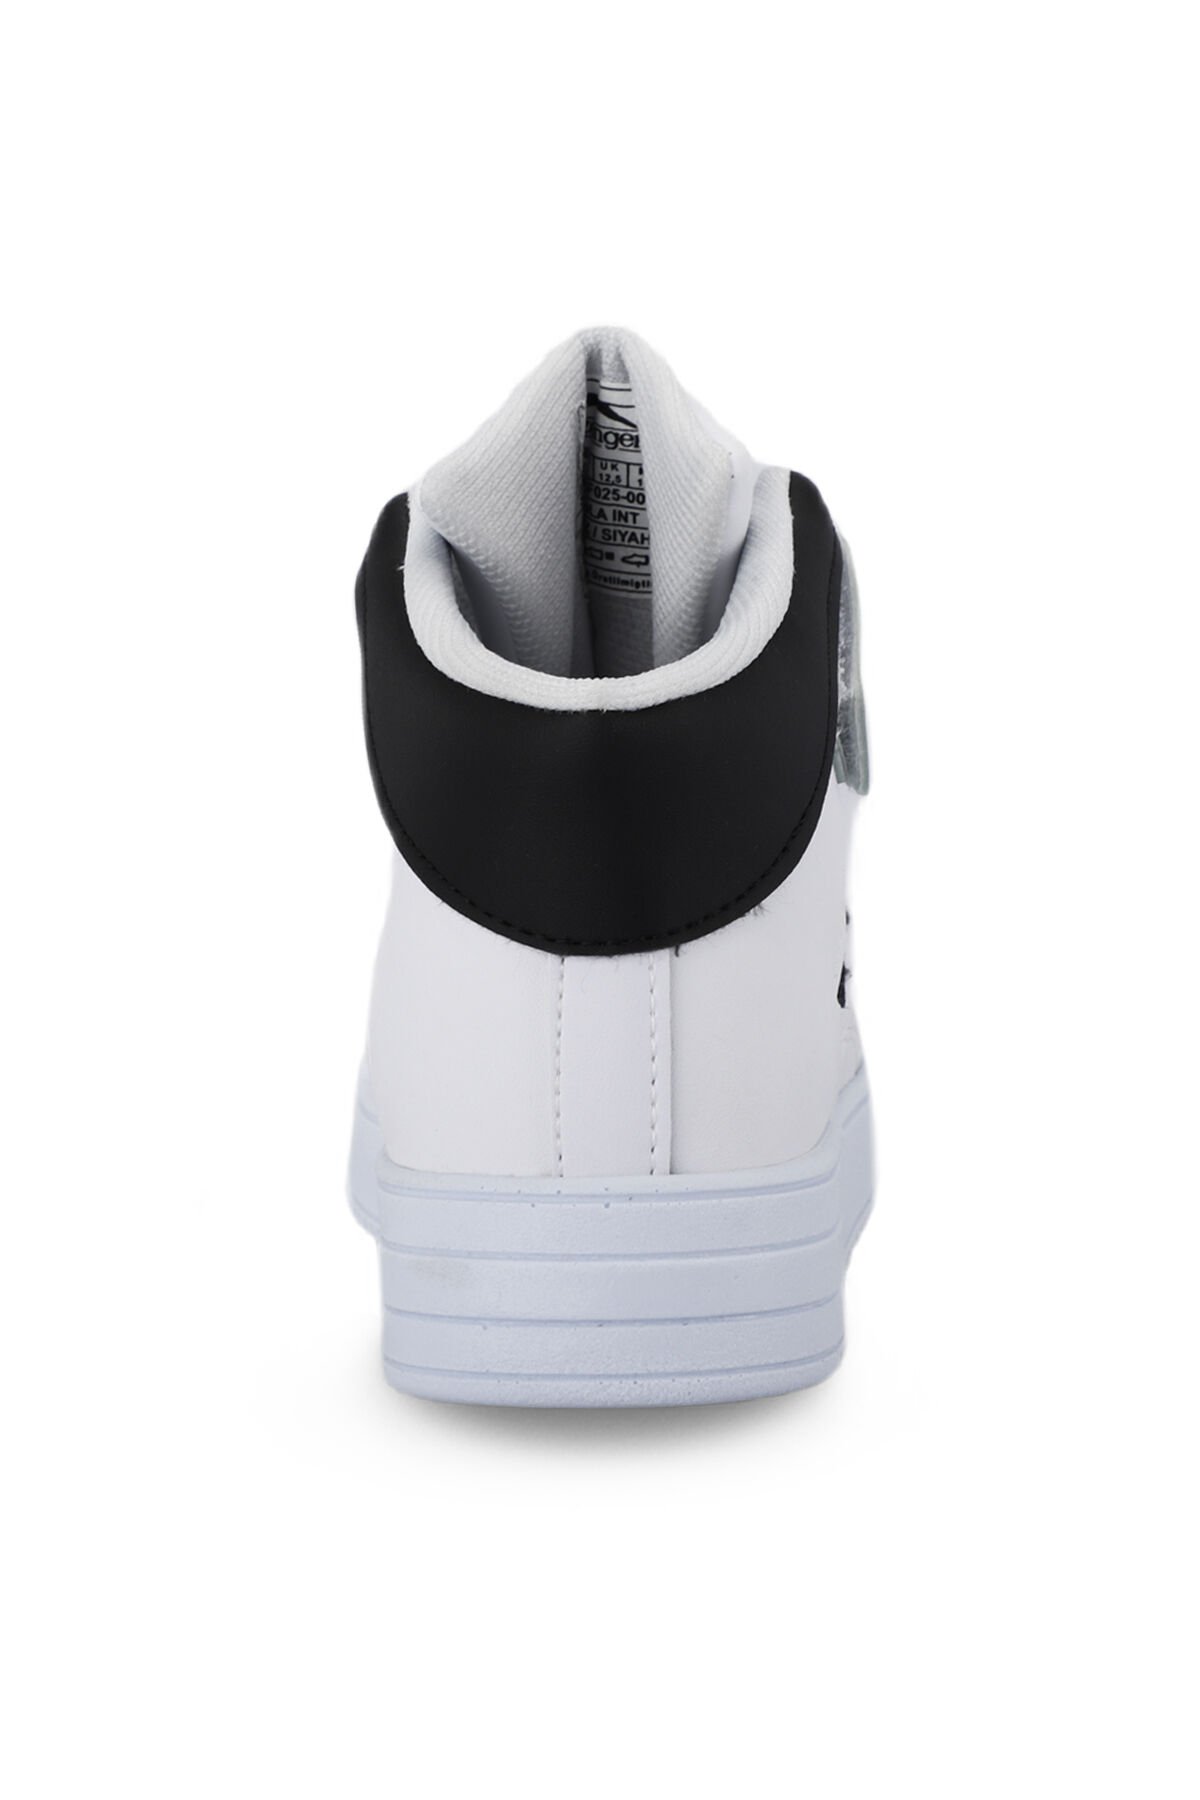 Slazenger NICOLA I Sneaker Erkek Çocuk Ayakkabı Beyaz / Siyah - Thumbnail